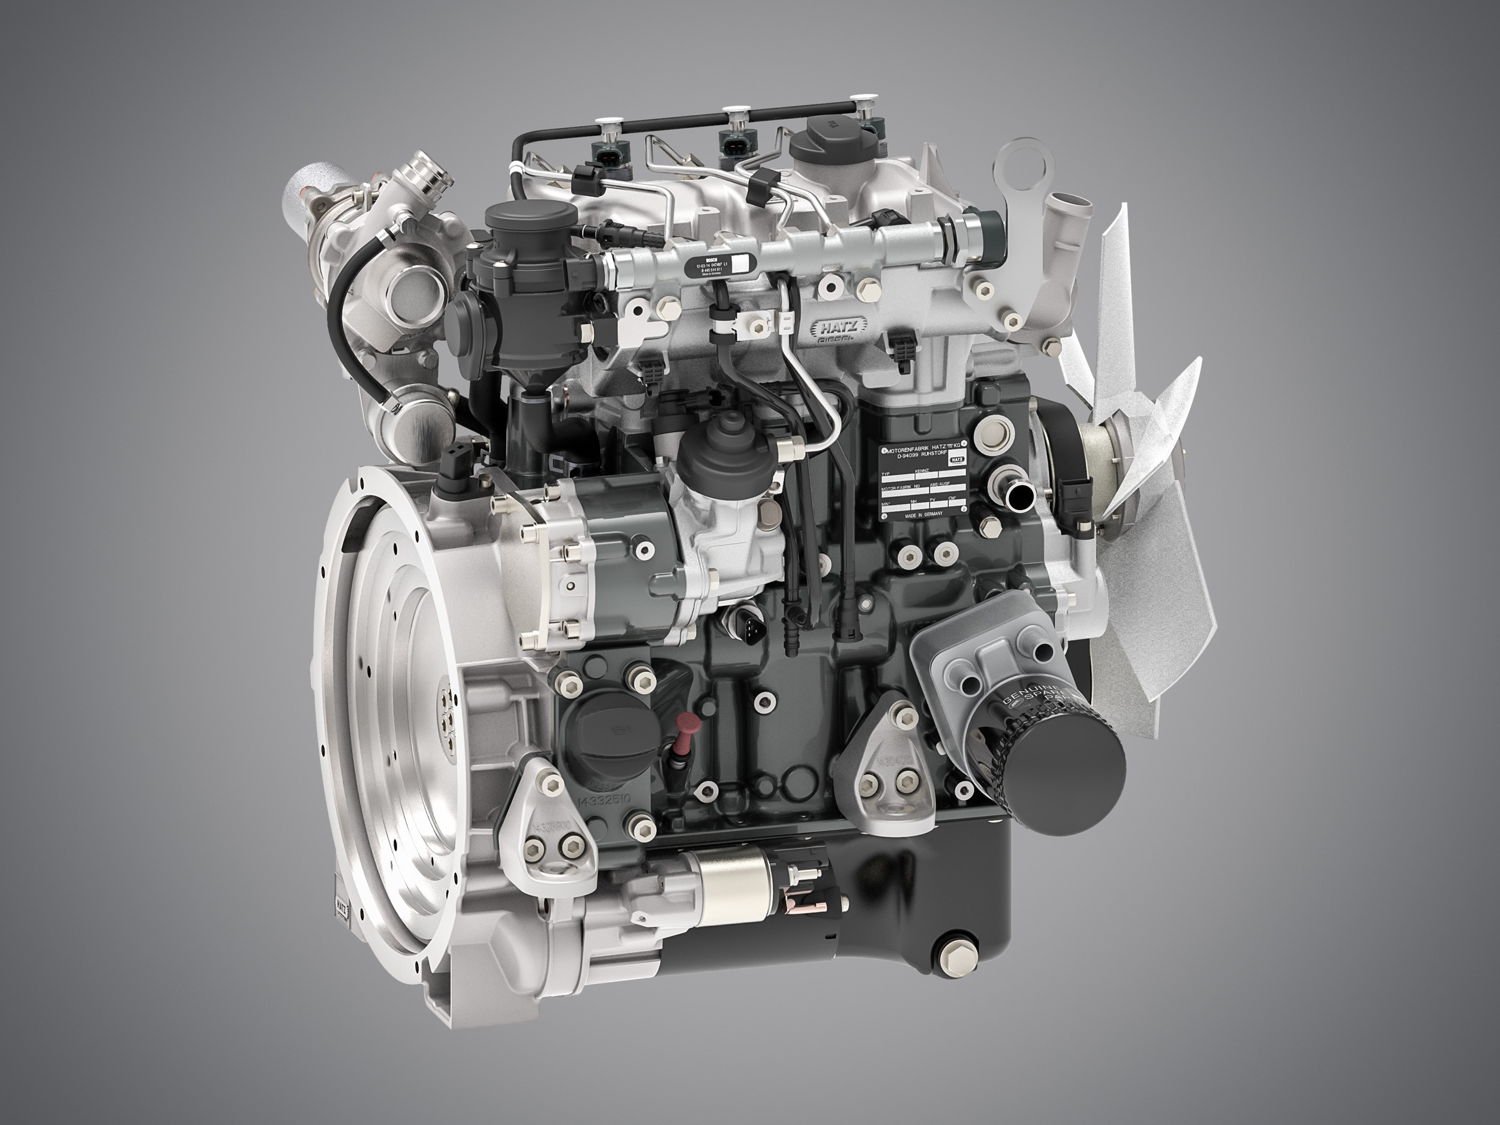 Neuer Hatz H-Serie 3H50T Dreizylinder: kompakter Motor, in der Ausführung mit 18,4 Kilowatt EU-Stage-V-konform ohne DPF